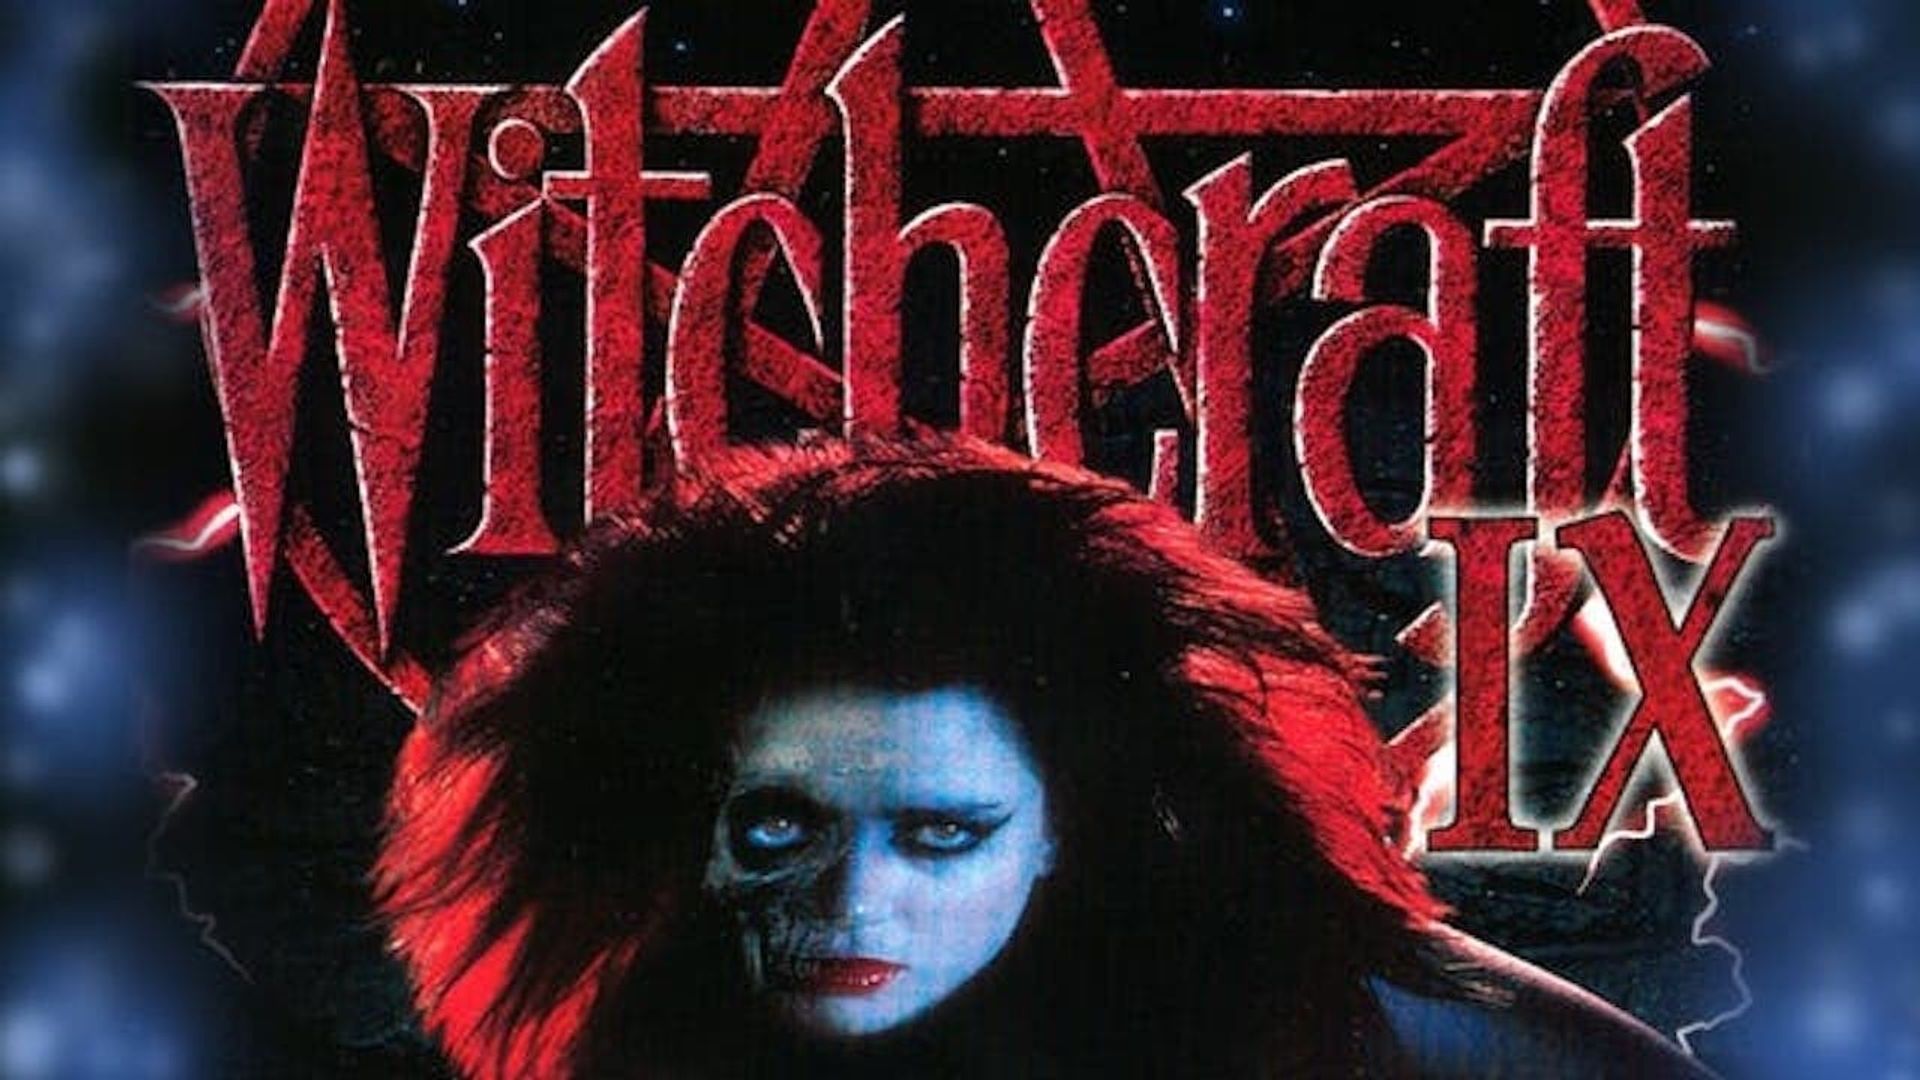 Witchcraft IX: Bitter Flesh background